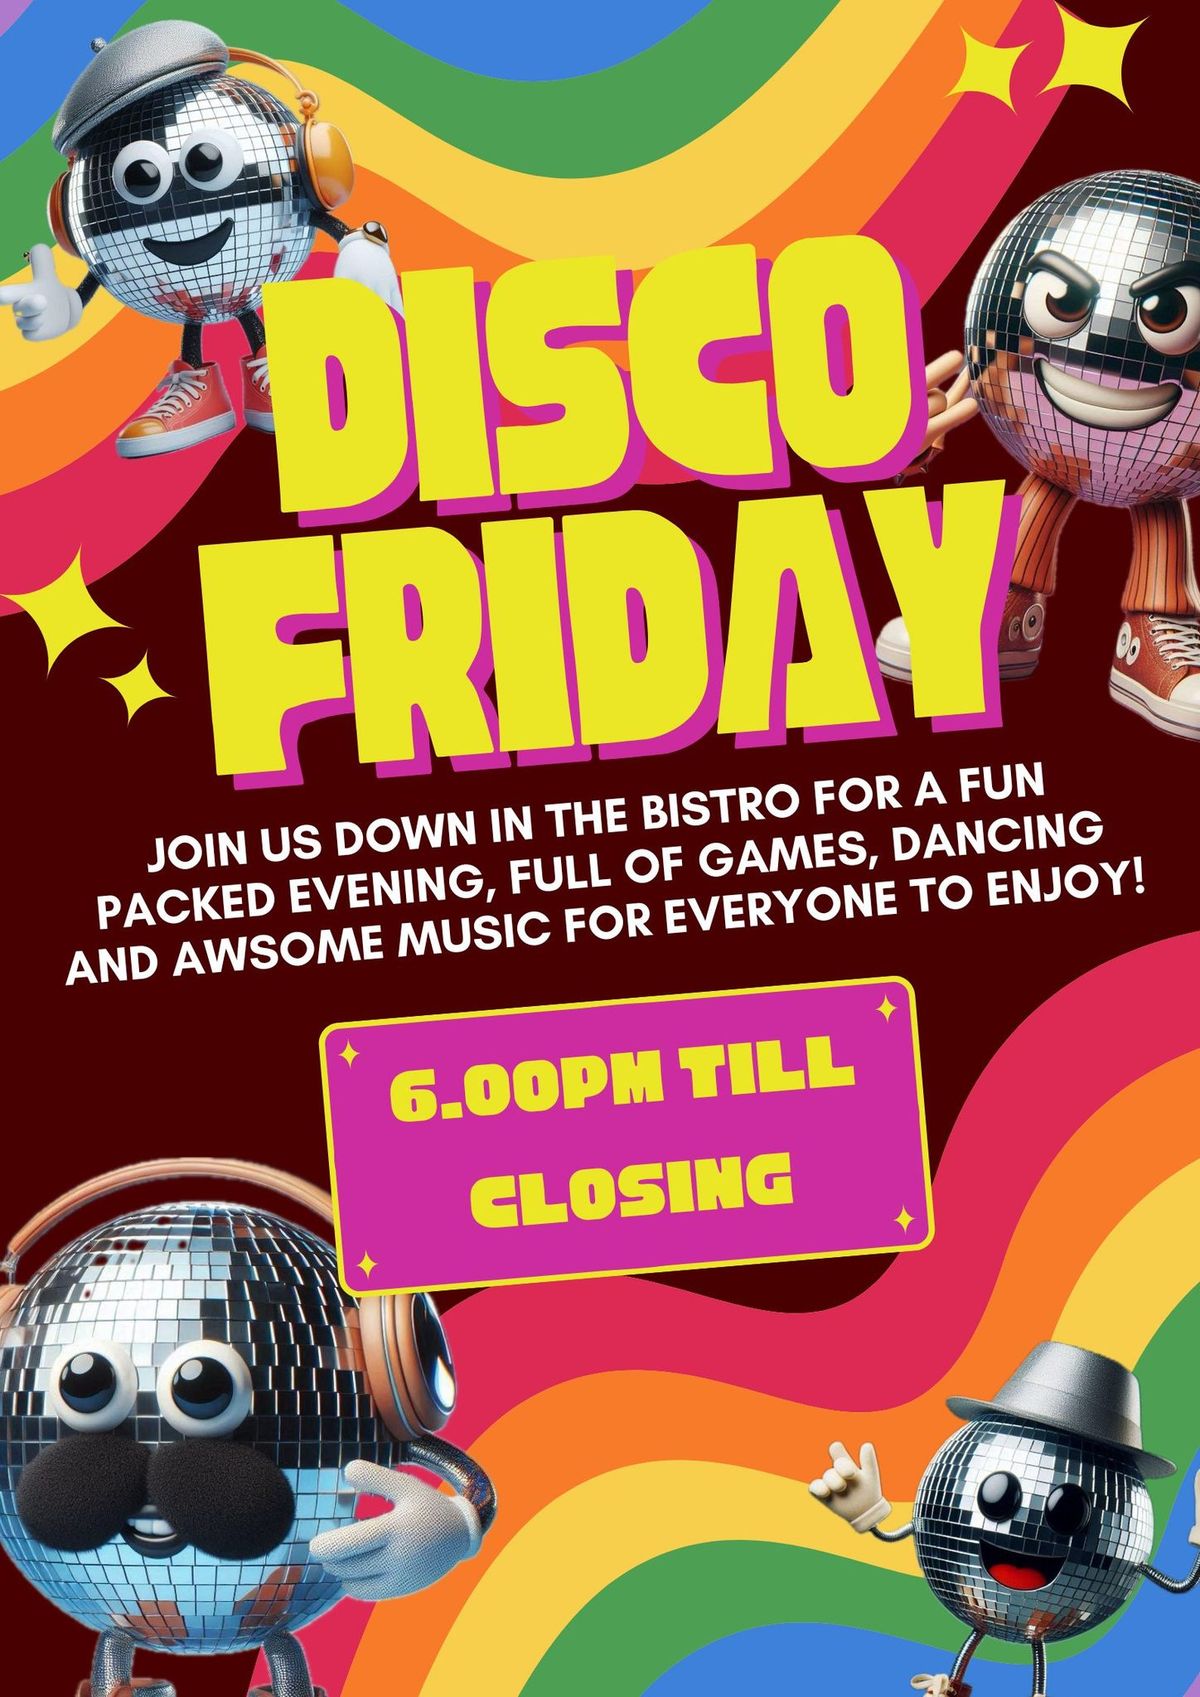 Disco Friday's at Piran Meadows